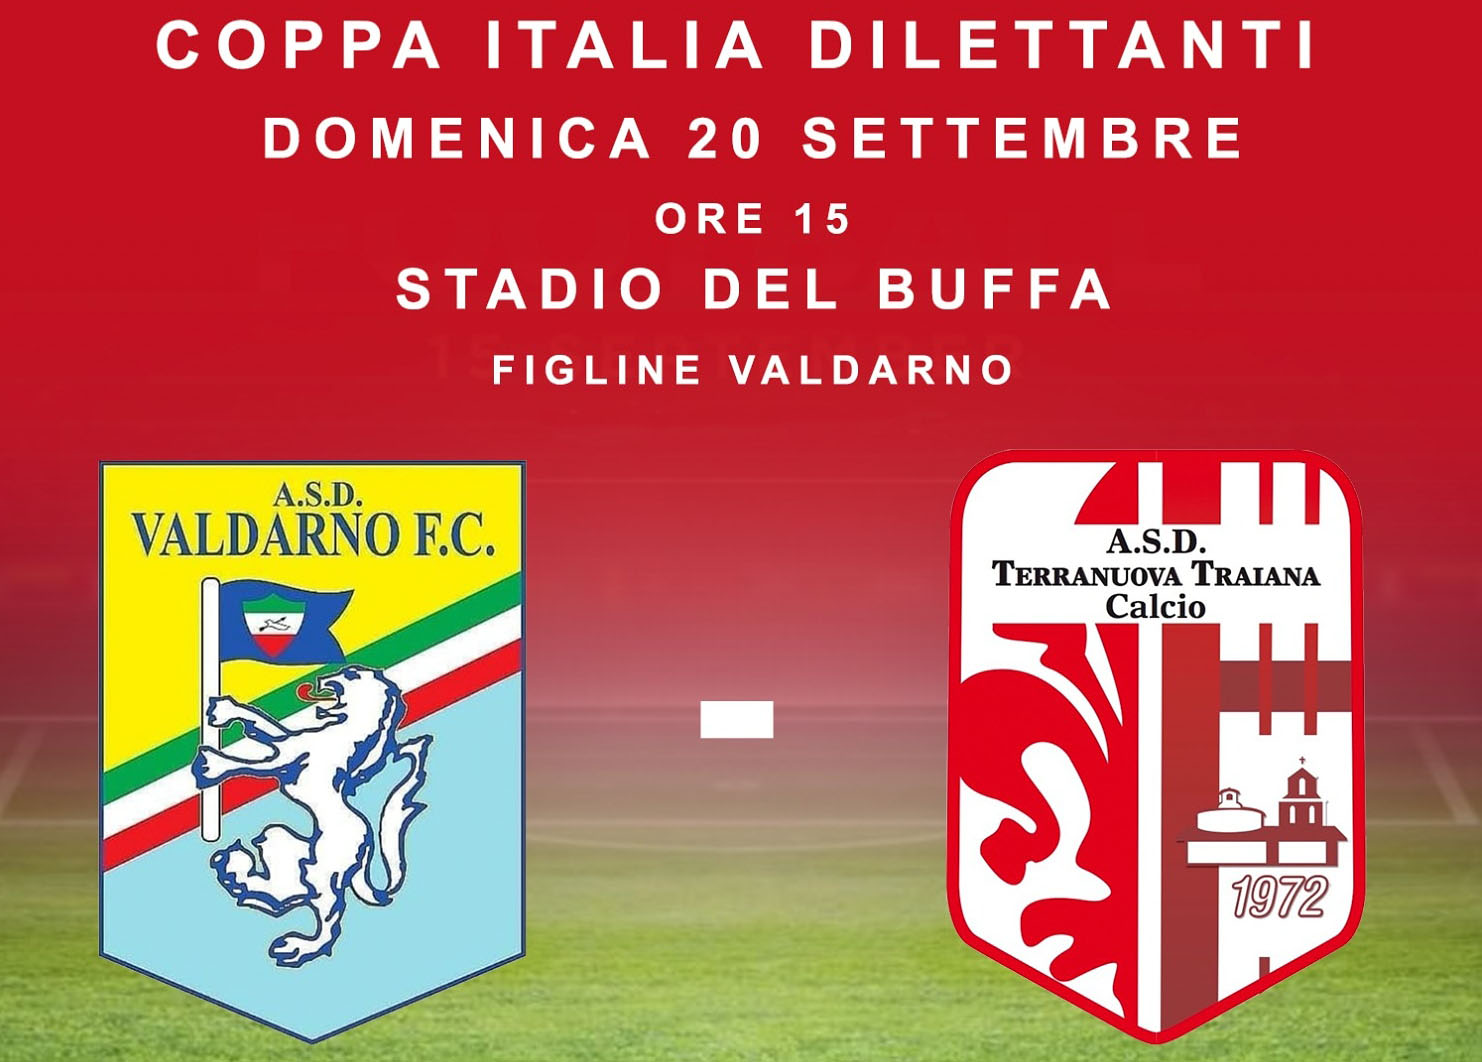 Coppa Italia dilettanti: presentazione Valdarno Fc vs Terranuova Traiana